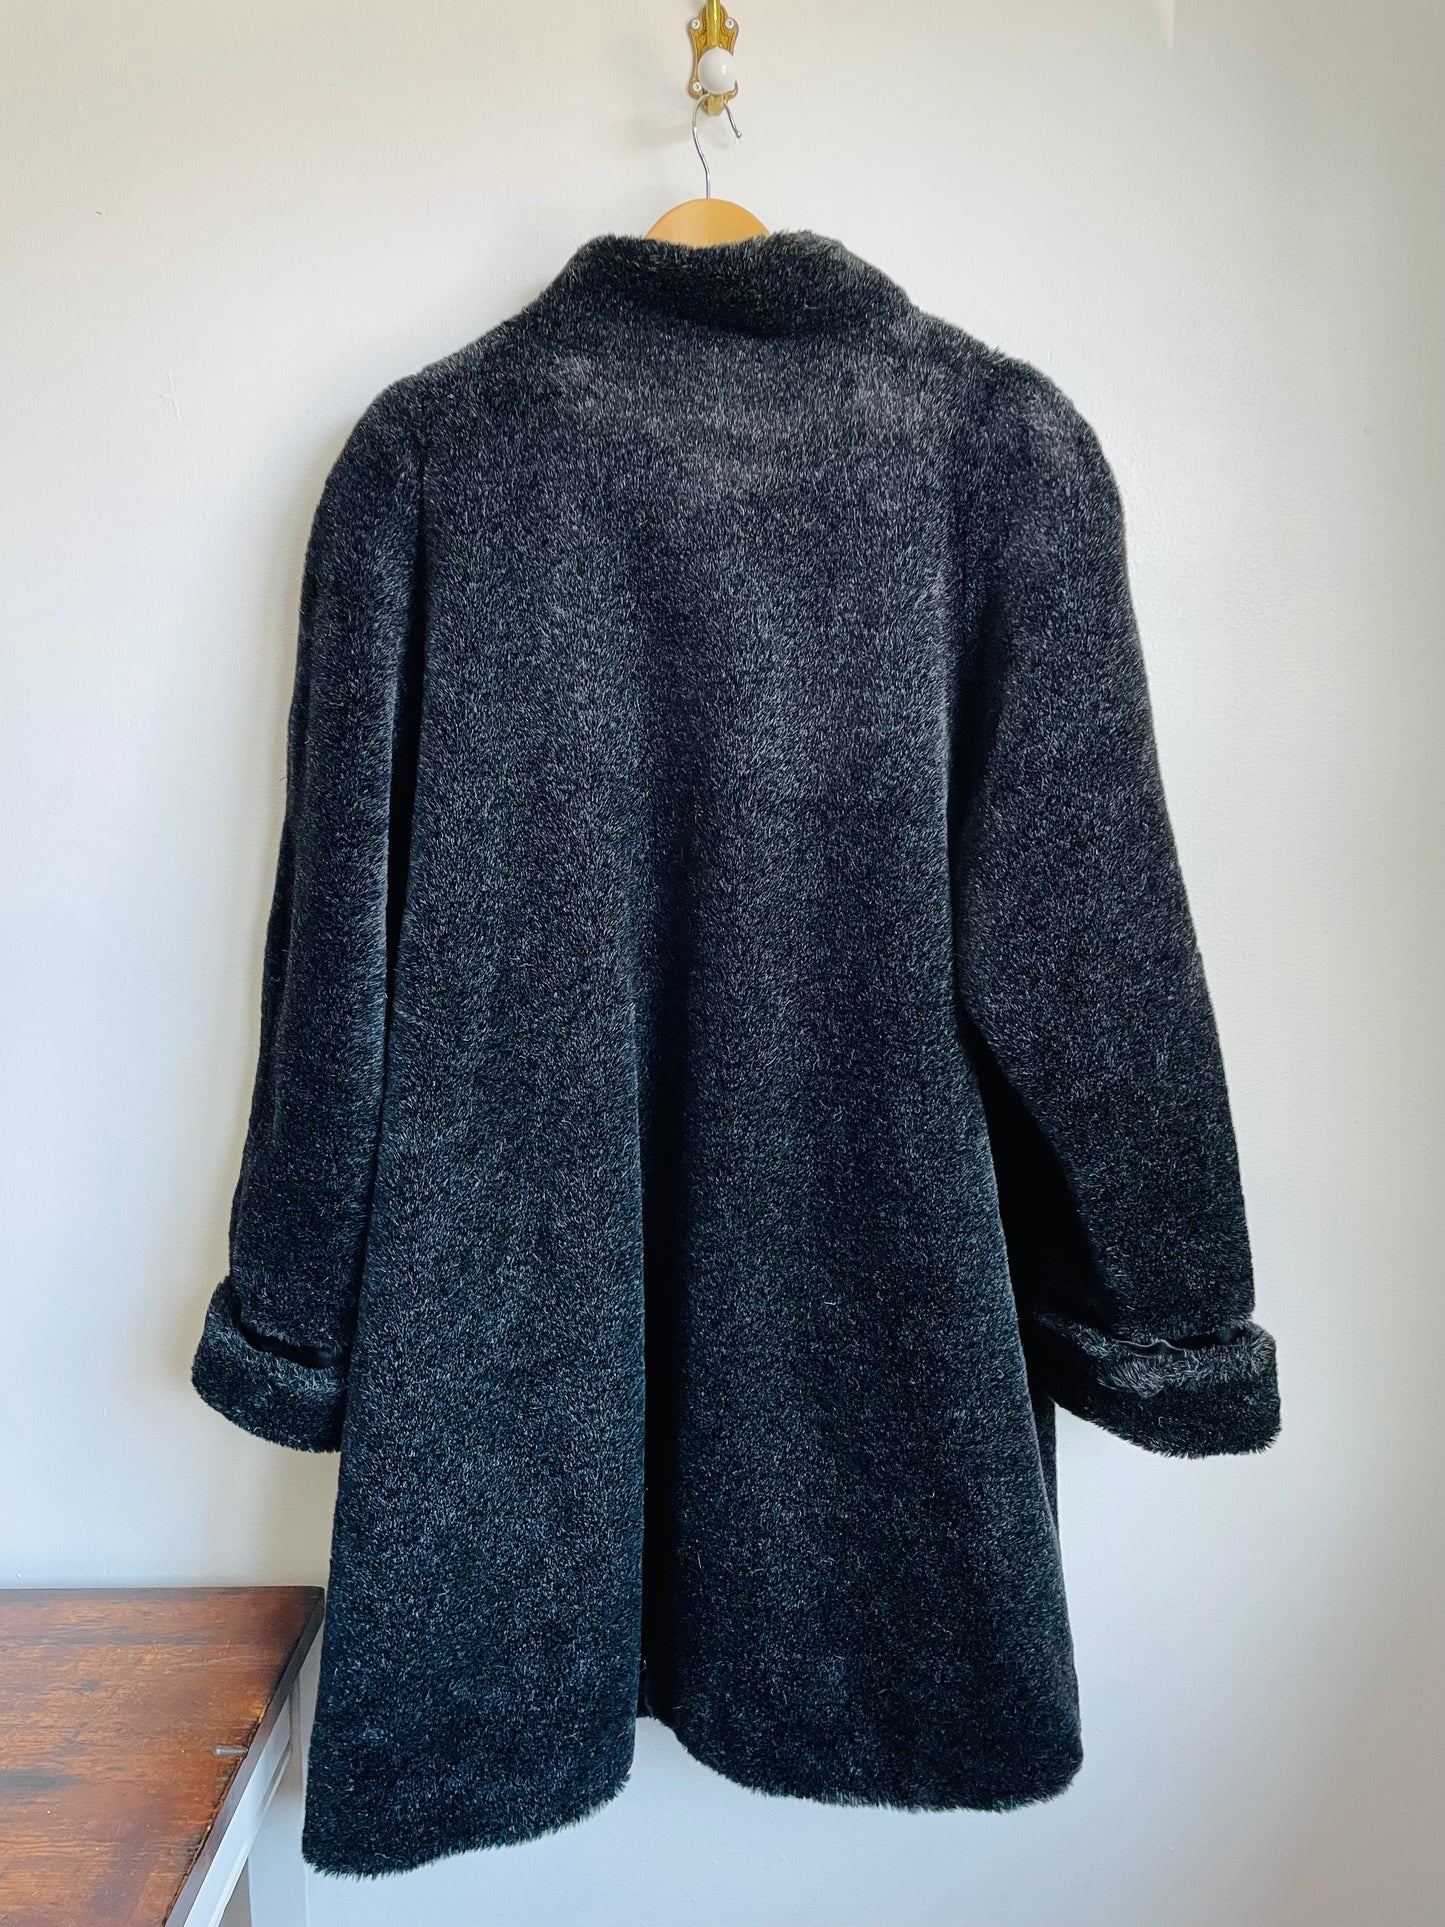 Novelti by Laura Black Faux Fur Coat - Size 14